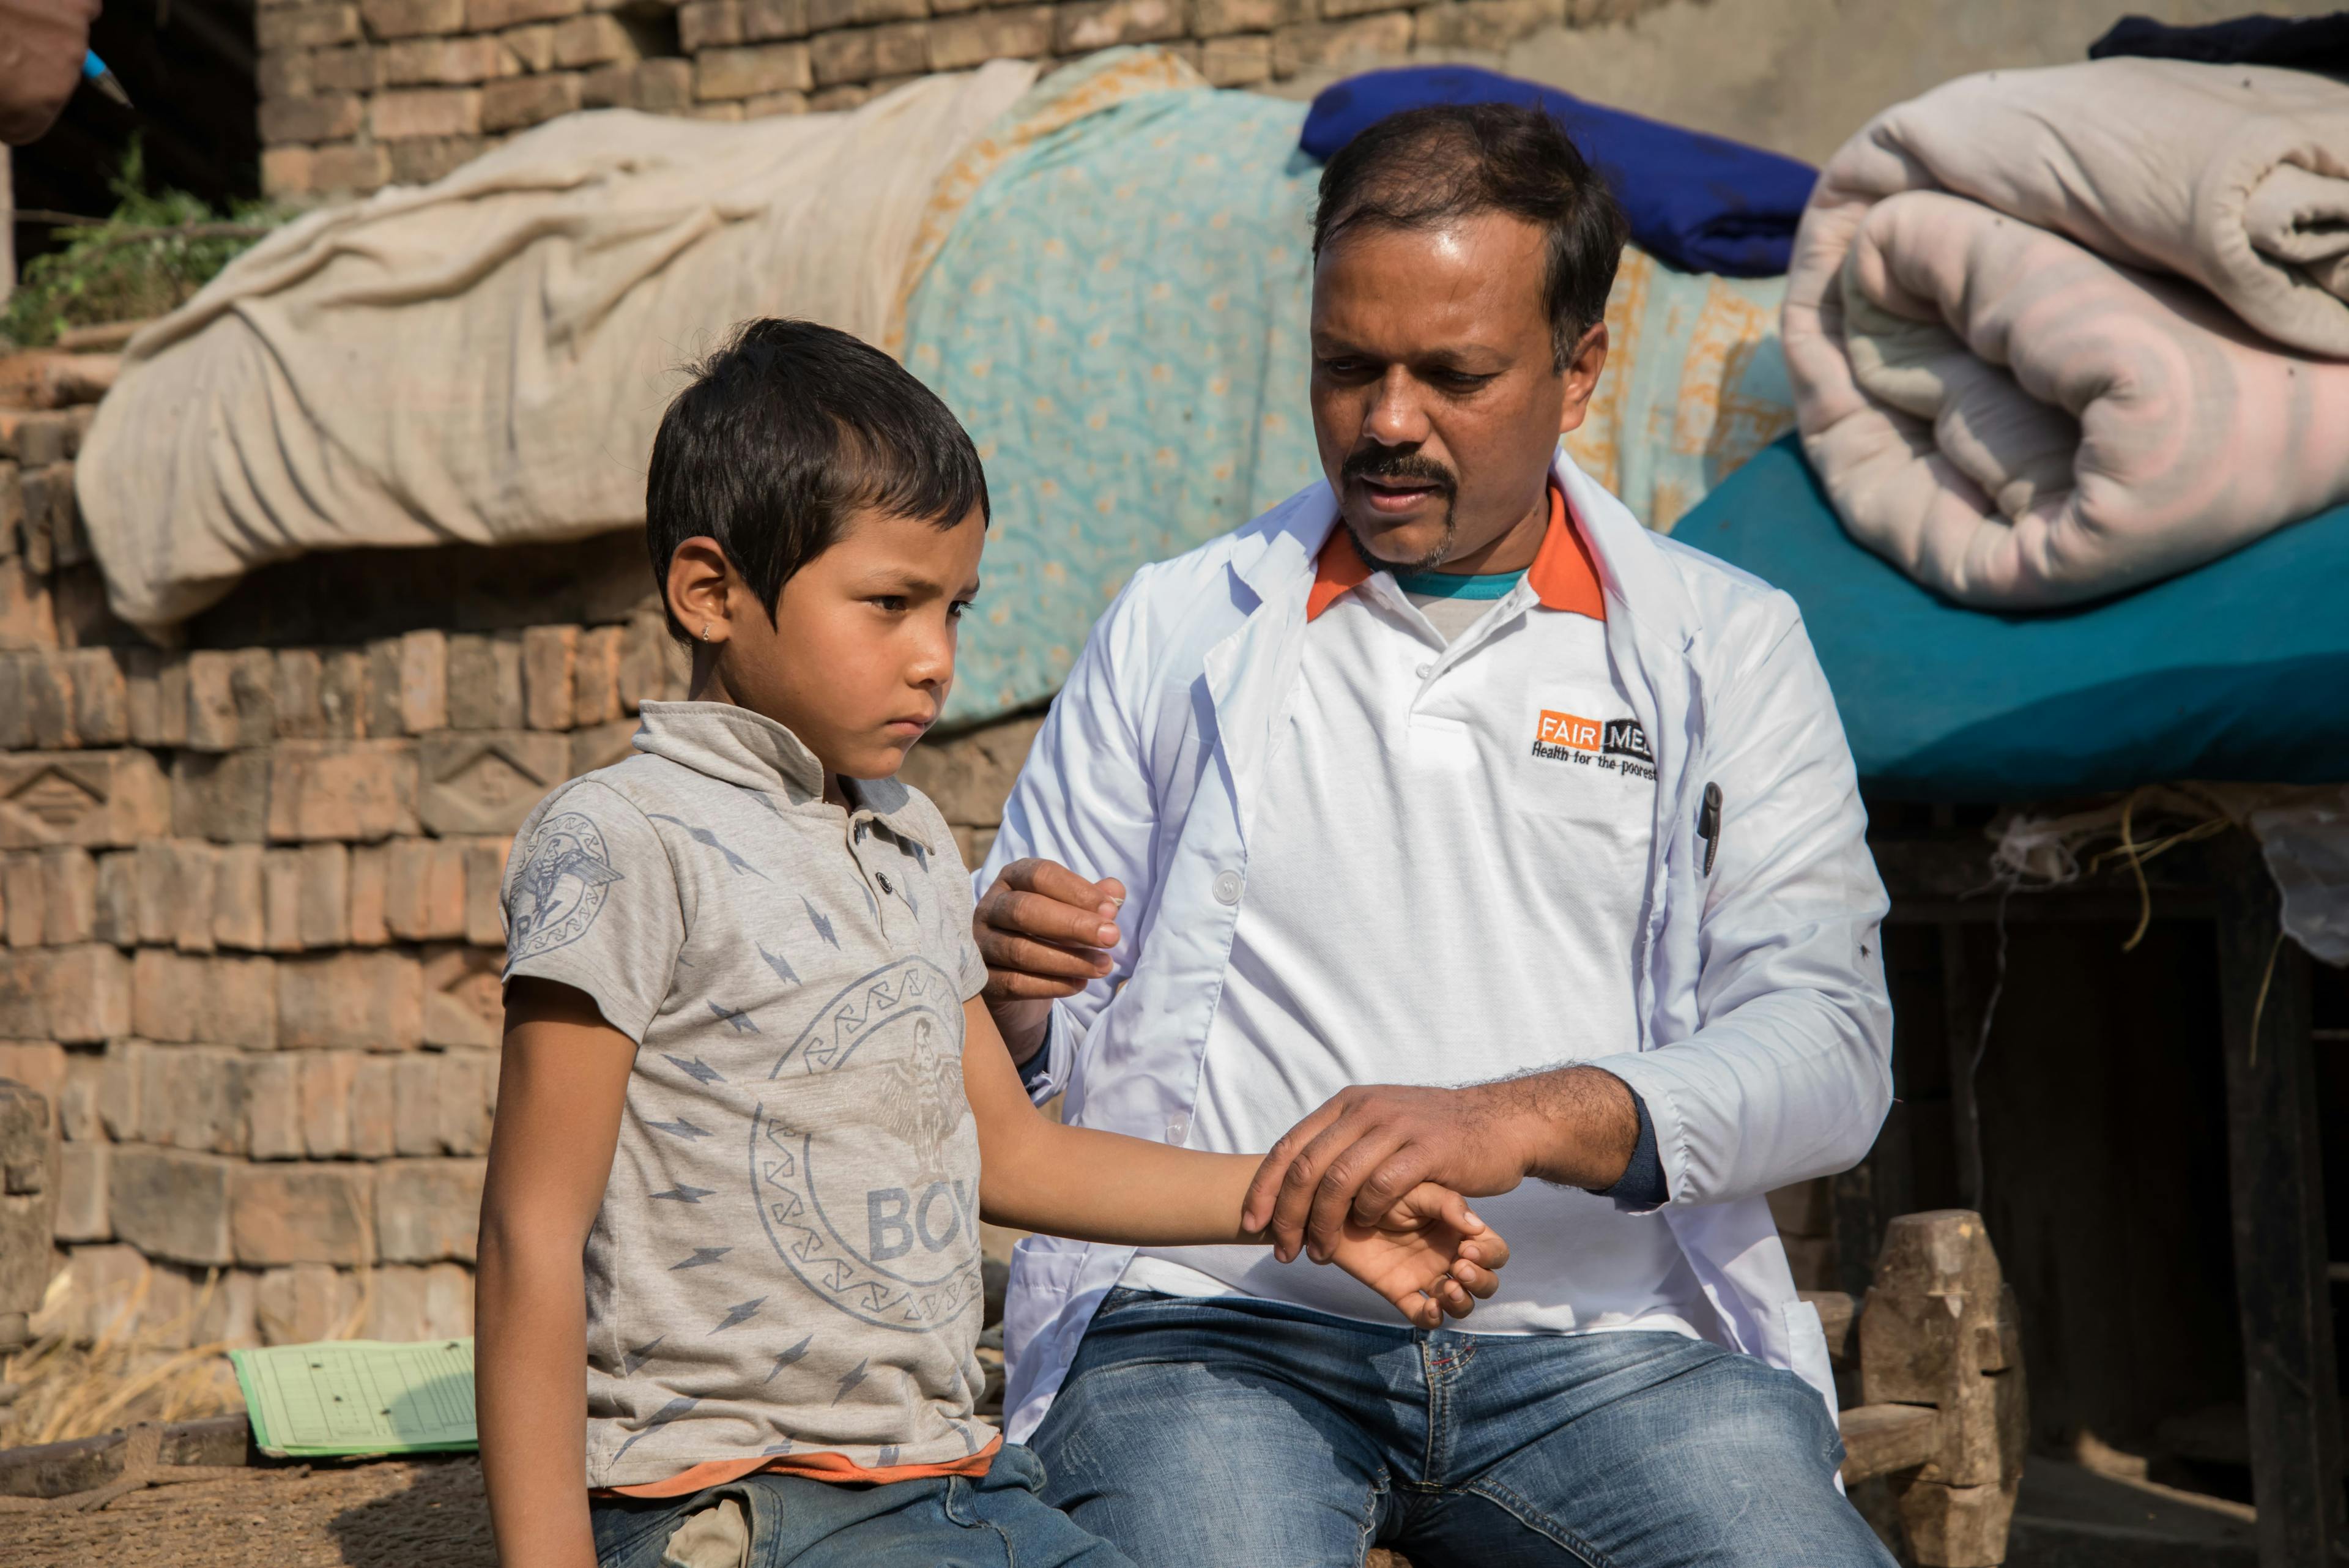 FAIRMED Mitarbeiter untersucht Kind in Indien. Sie sitzen gemeinsam auf einer Mauer und der FAIRMED-Mitarbeitende untersucht den Arm des Knaben.